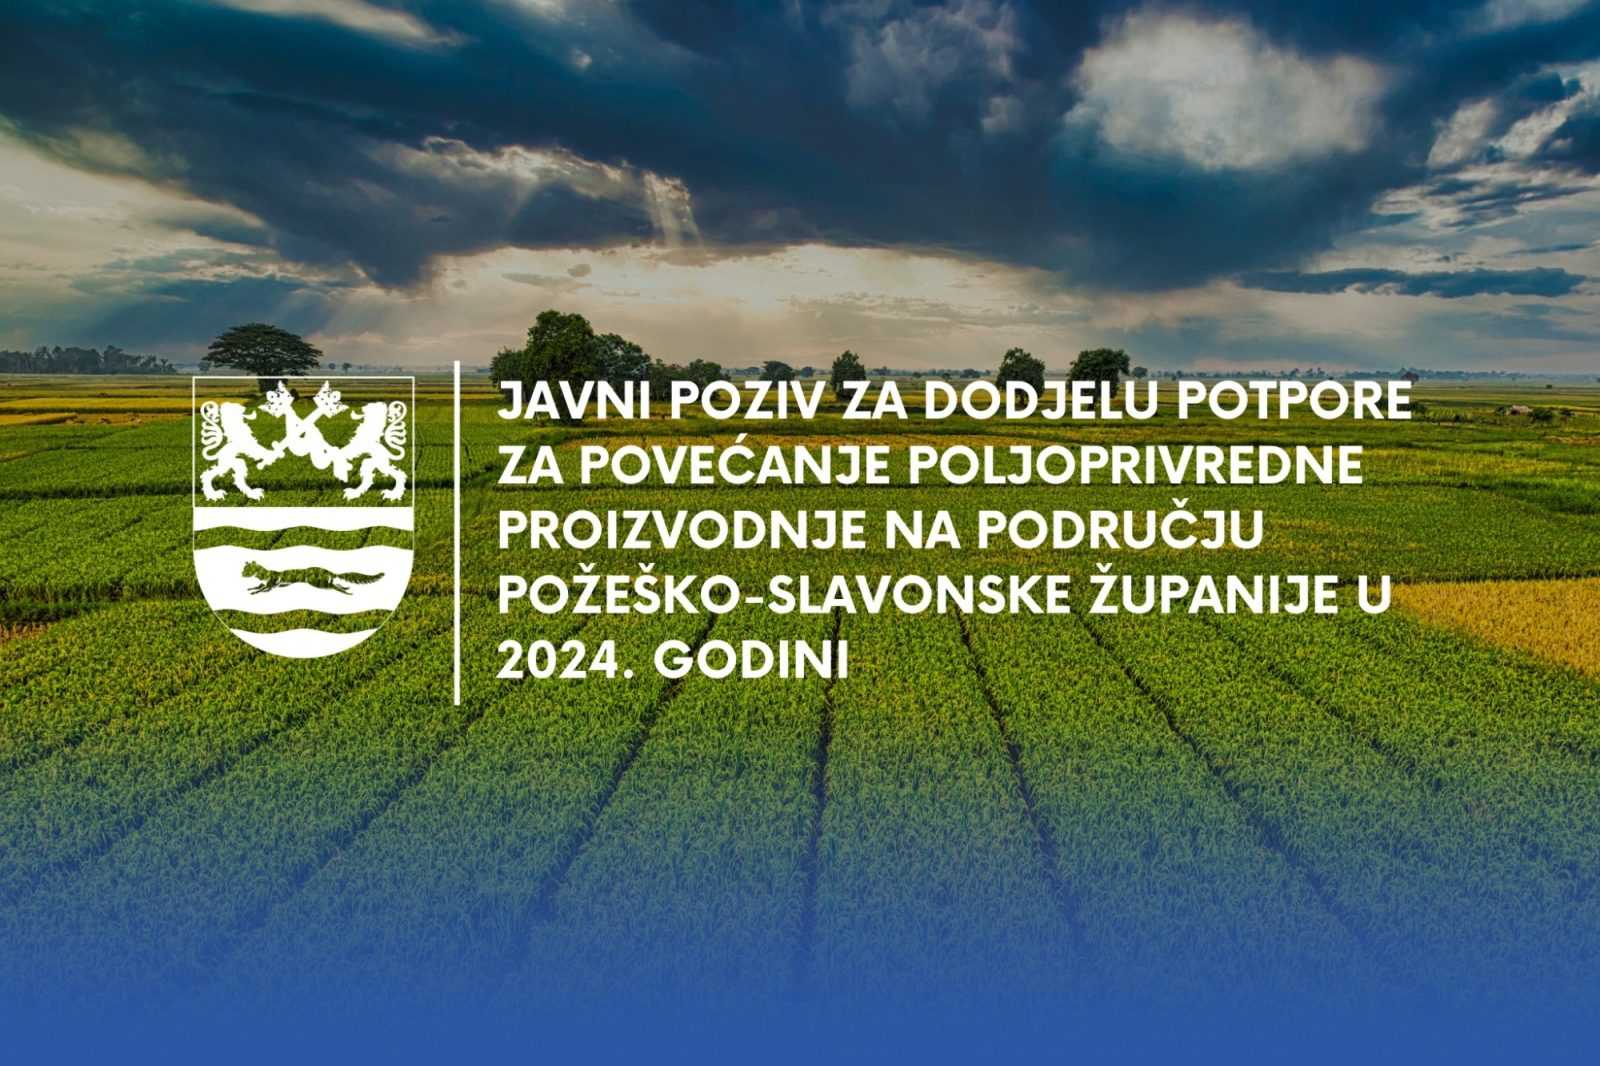 Otvoren javni poziv usmjeren povećanju poljoprivredne proizvodnje na području županije